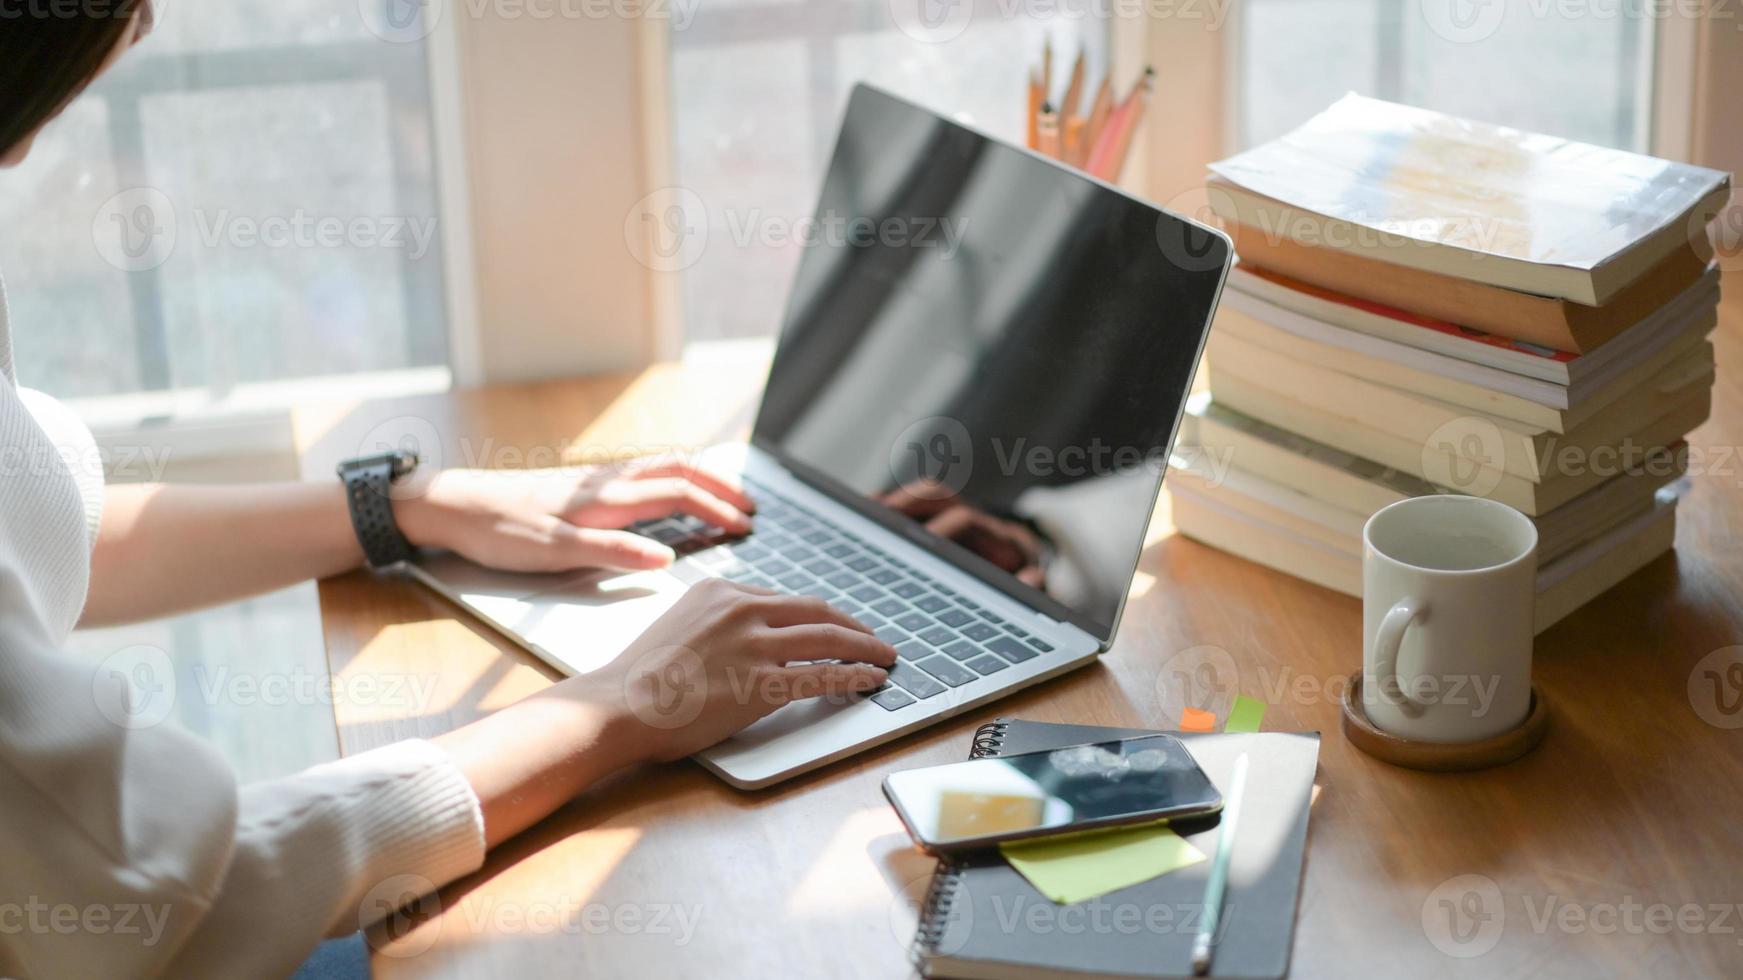 close-up, de hand van een jong meisje gebruikt een laptop op een houten bureau op kantoor met prachtige verlichting. foto